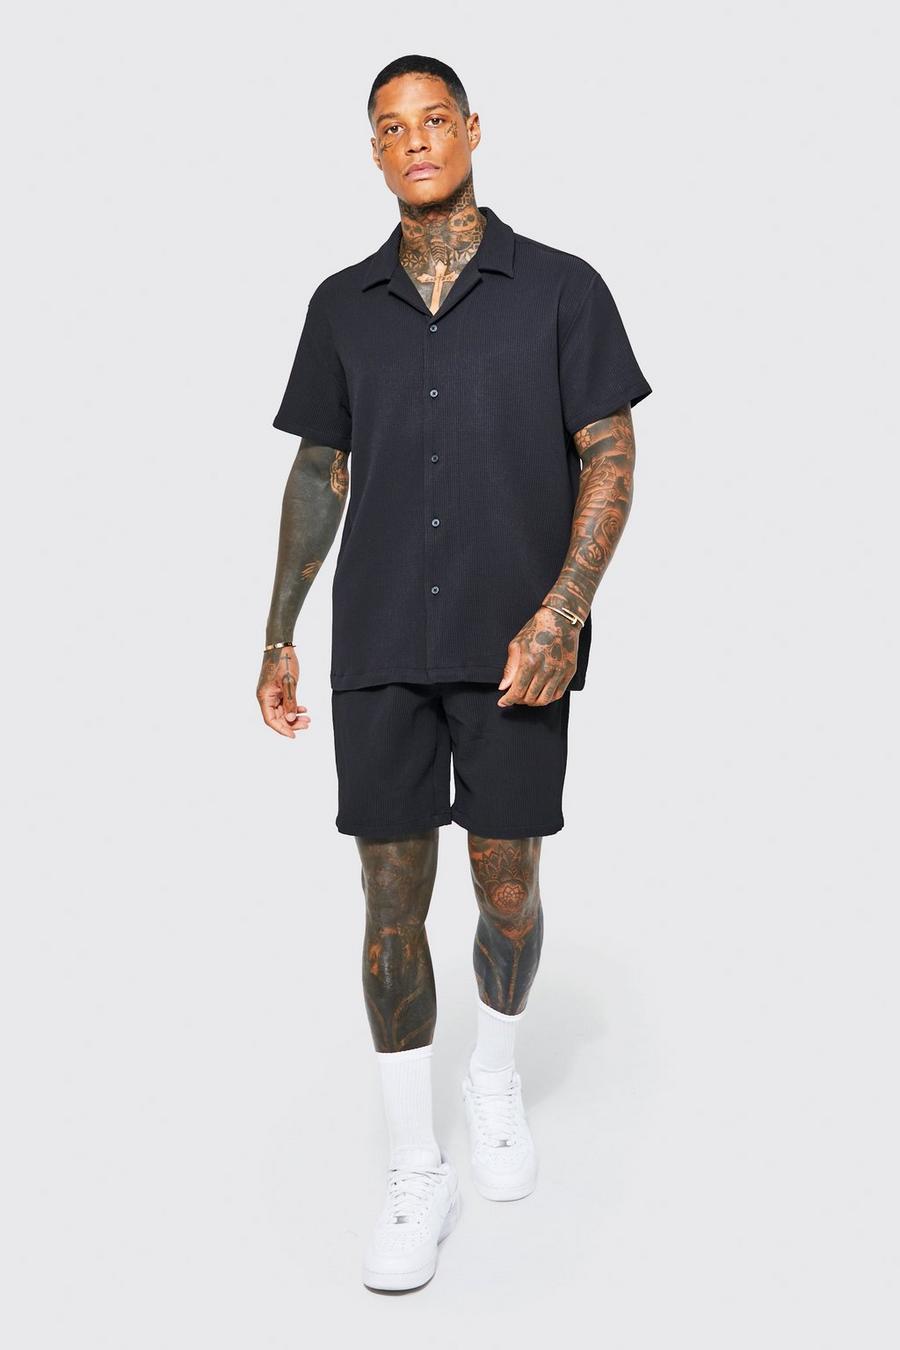 Black Oversized Short Sleeve Pleated Shirt And Short